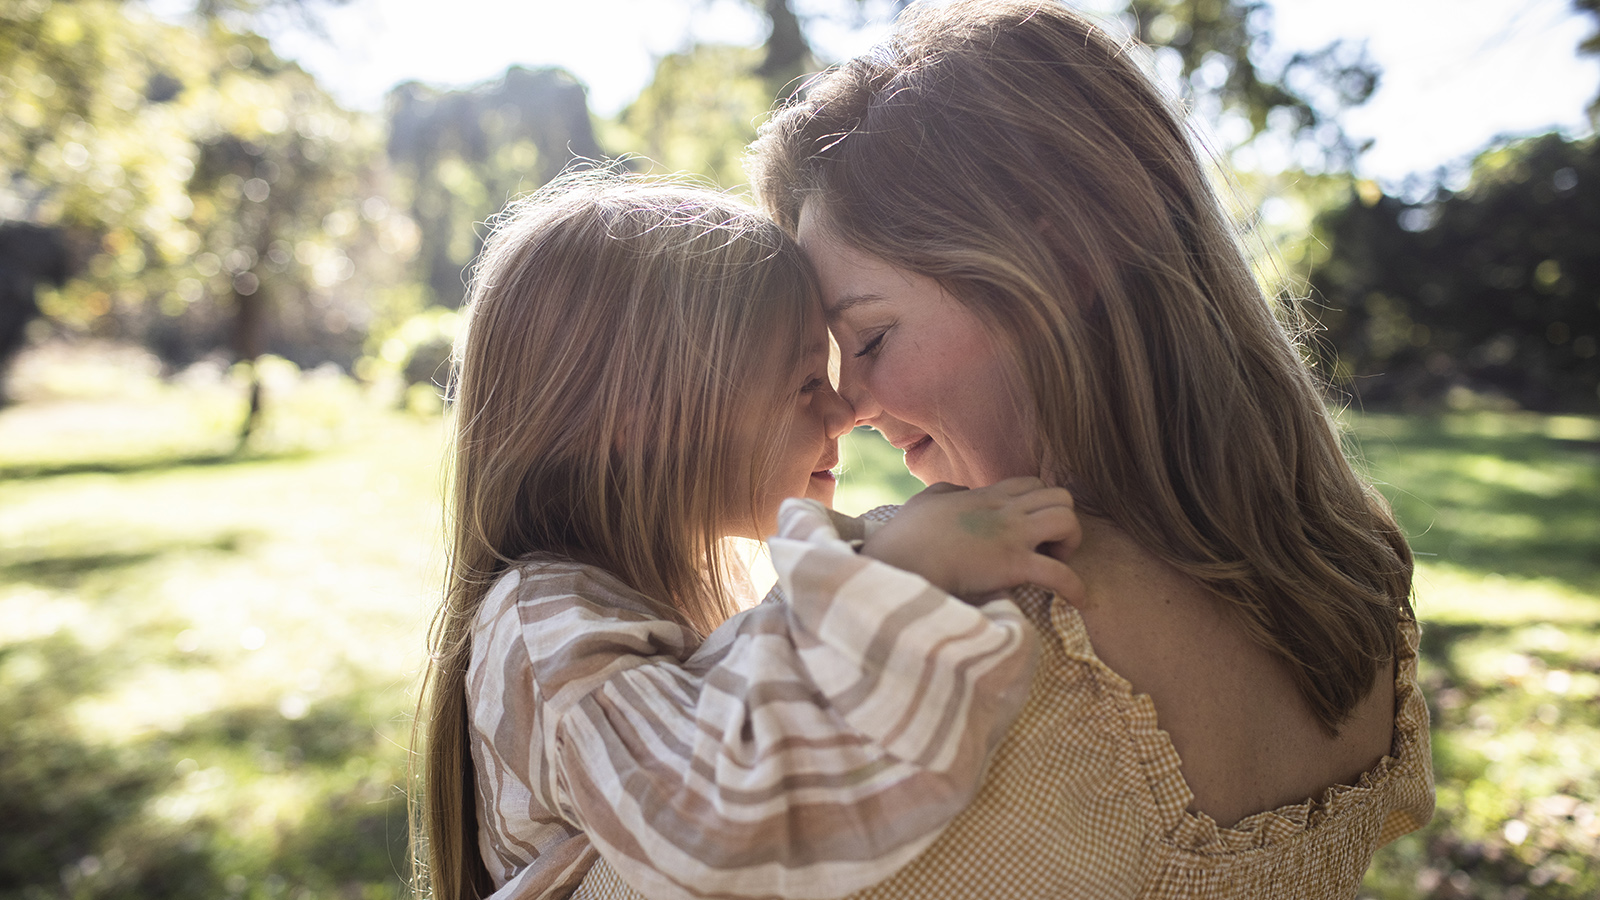 Мы с тобой одной мысли: как формируется привязанность между матерью и  ребенком | Forbes Woman